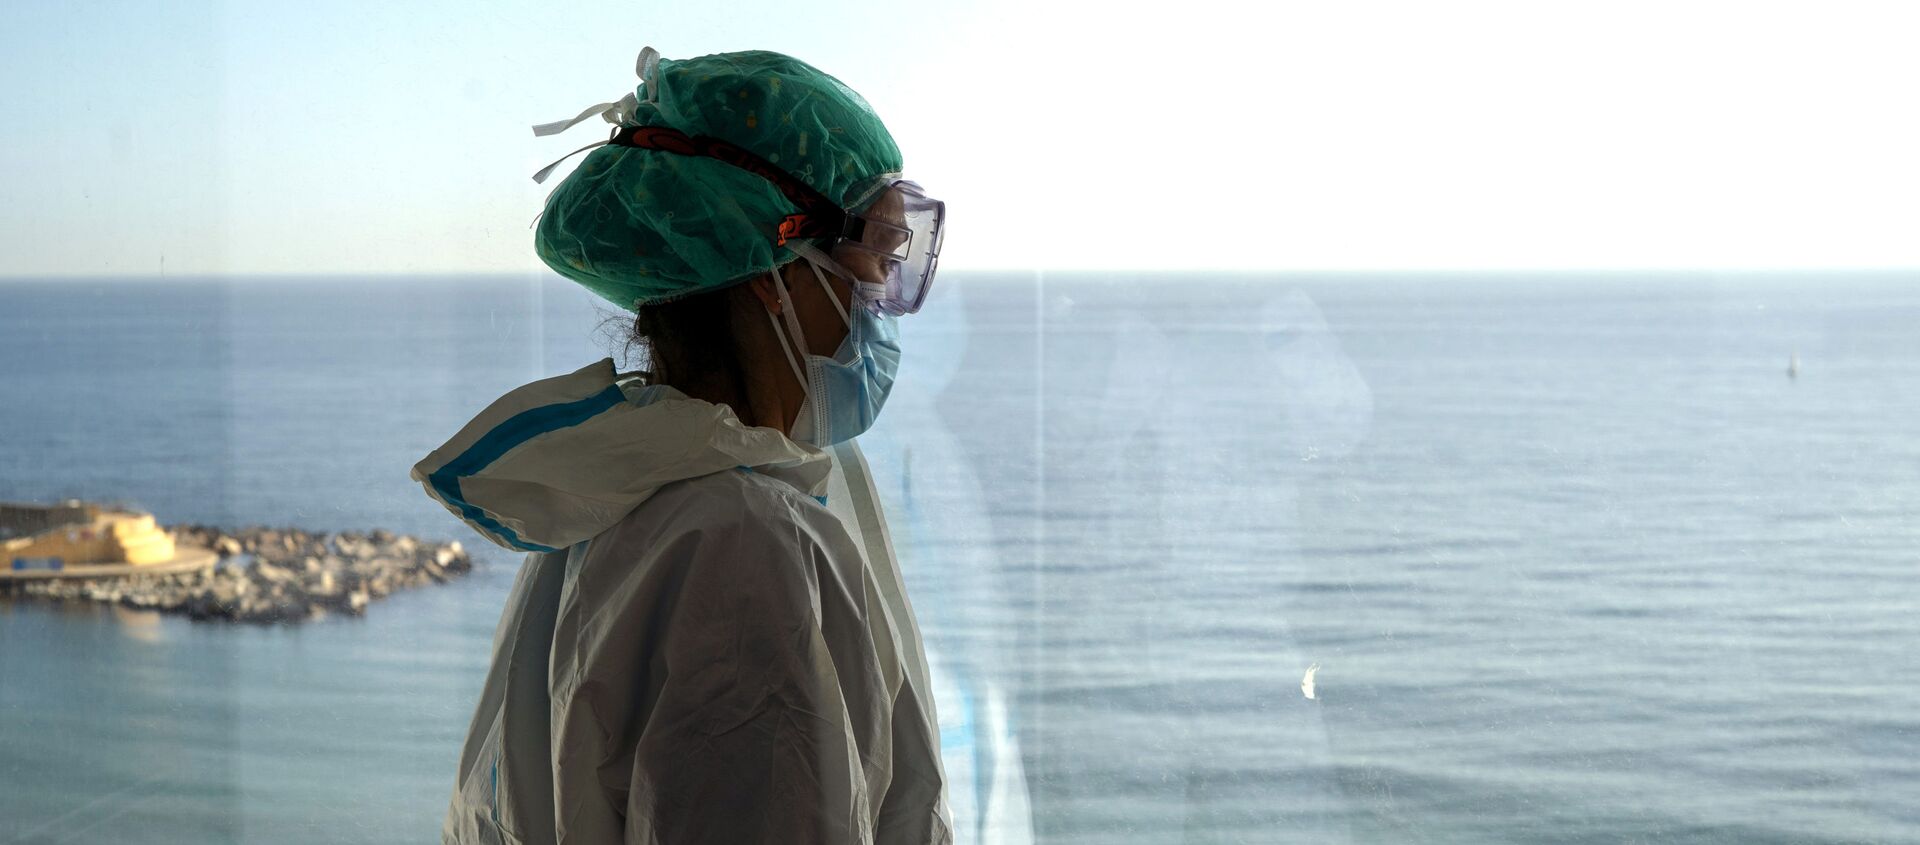 La enfermera Marta Fernández mira el mar desde una ventana durante un breve descanso en la sala COVID-19 del hospital del Mar en Barcelona - Sputnik Mundo, 1920, 02.02.2021